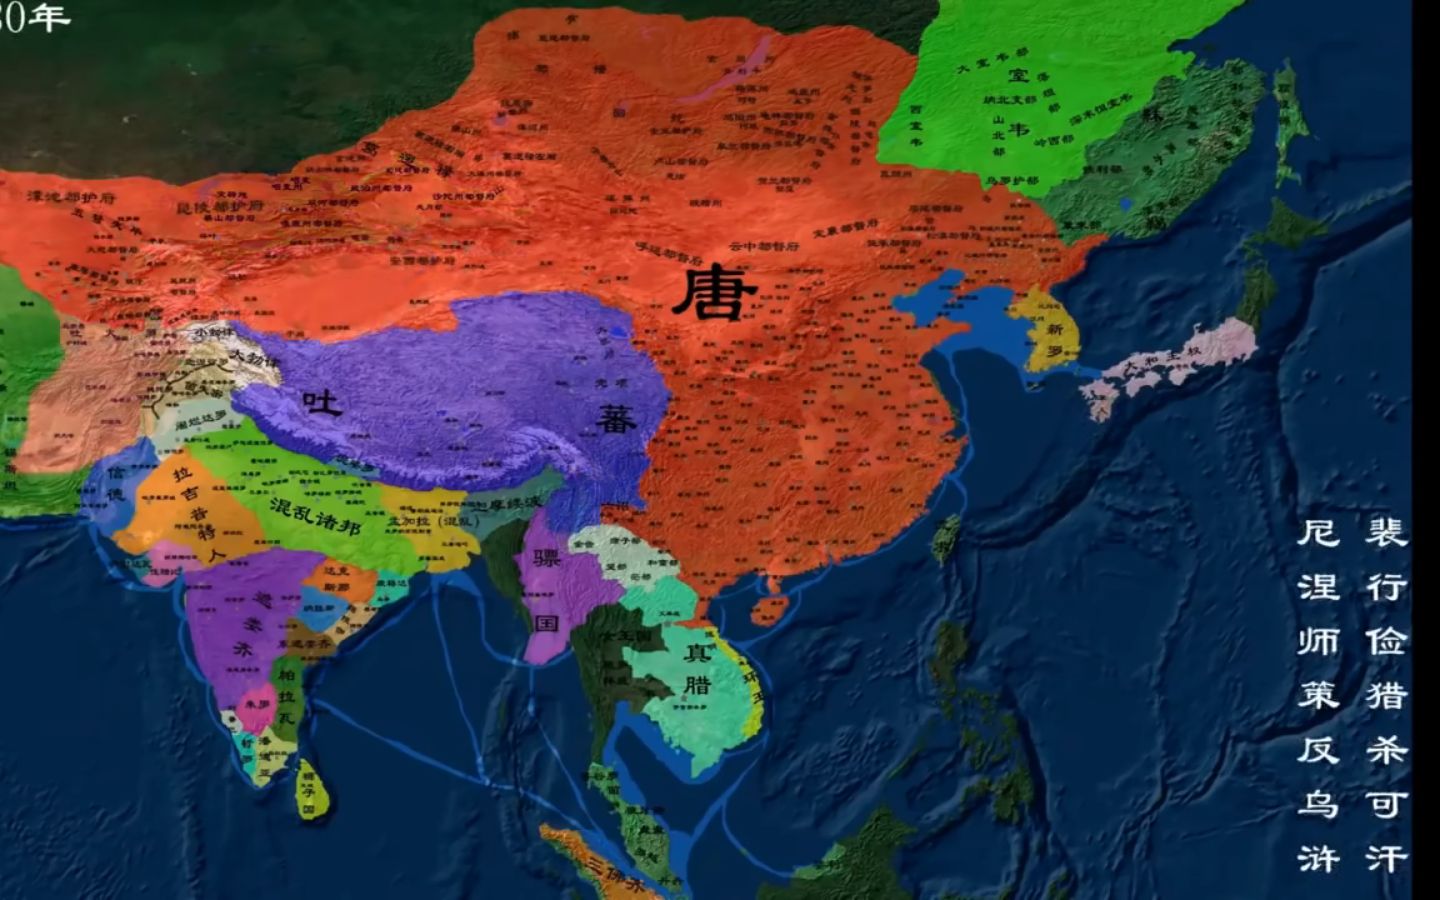 【布哈林版】中国历代疆域变化史地图 第一版